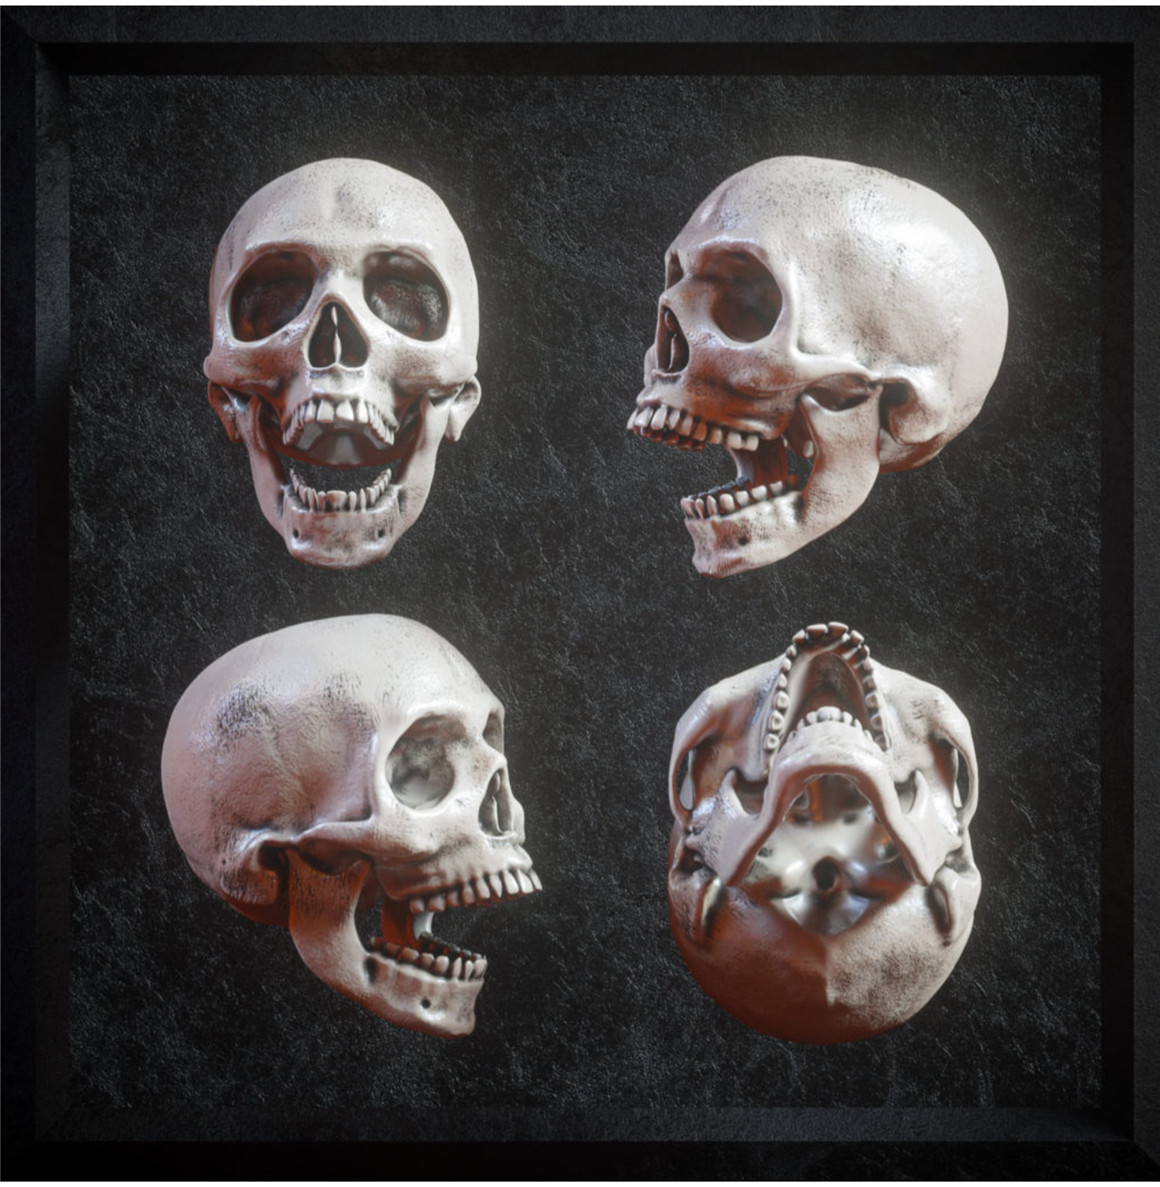 炫酷逼真3D人类头盖骨FBX模型素材 Billelis 3D Skull Model Pack （8816）图层云